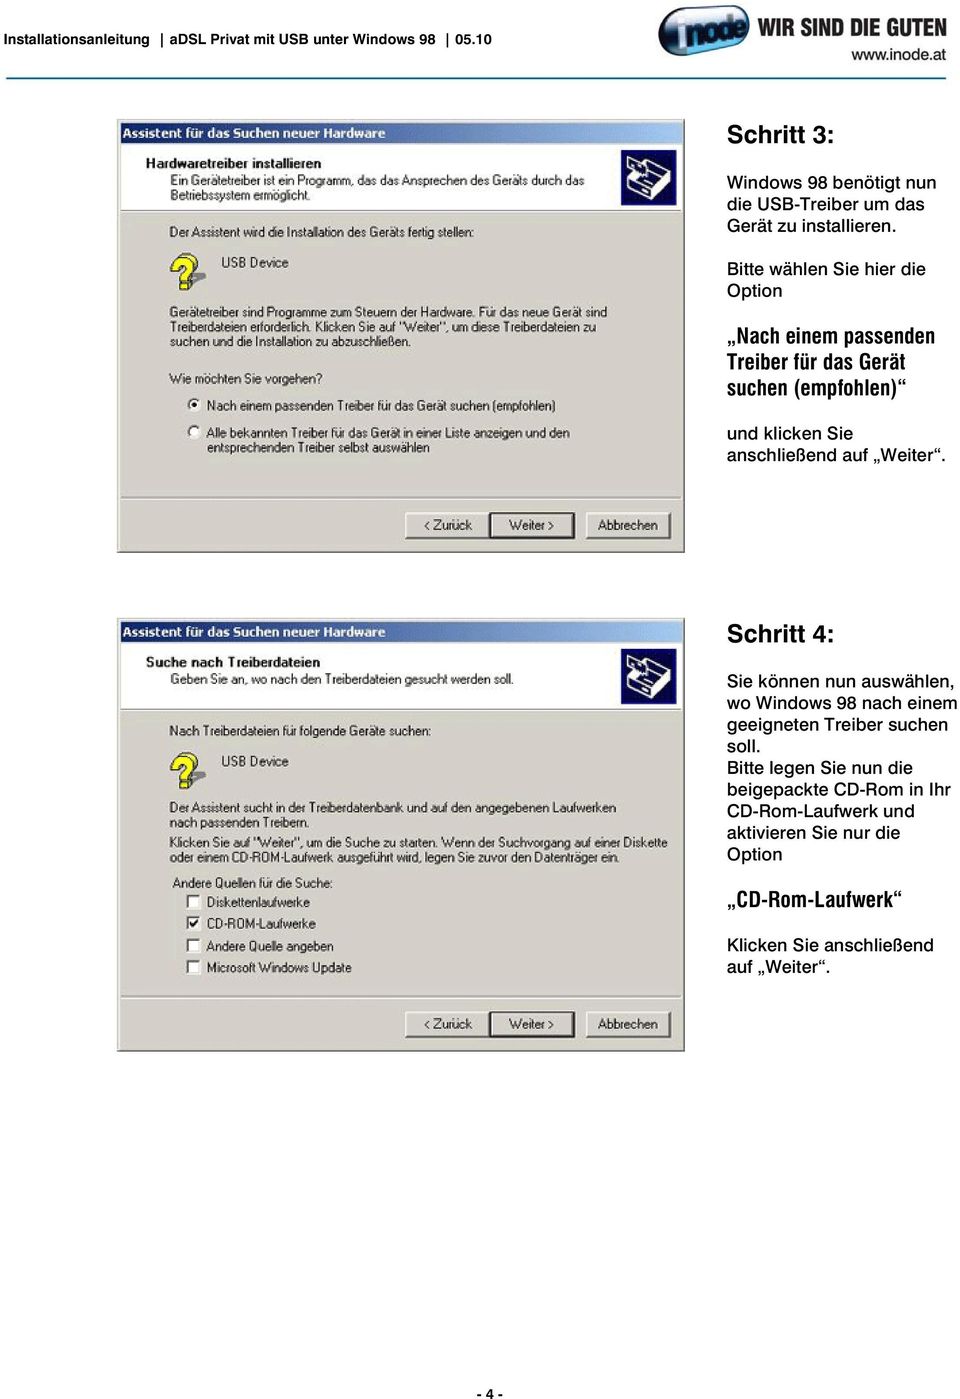 anschließend auf Weiter. Schritt 4: Sie können nun auswählen, wo Windows 98 nach einem geeigneten Treiber suchen soll.